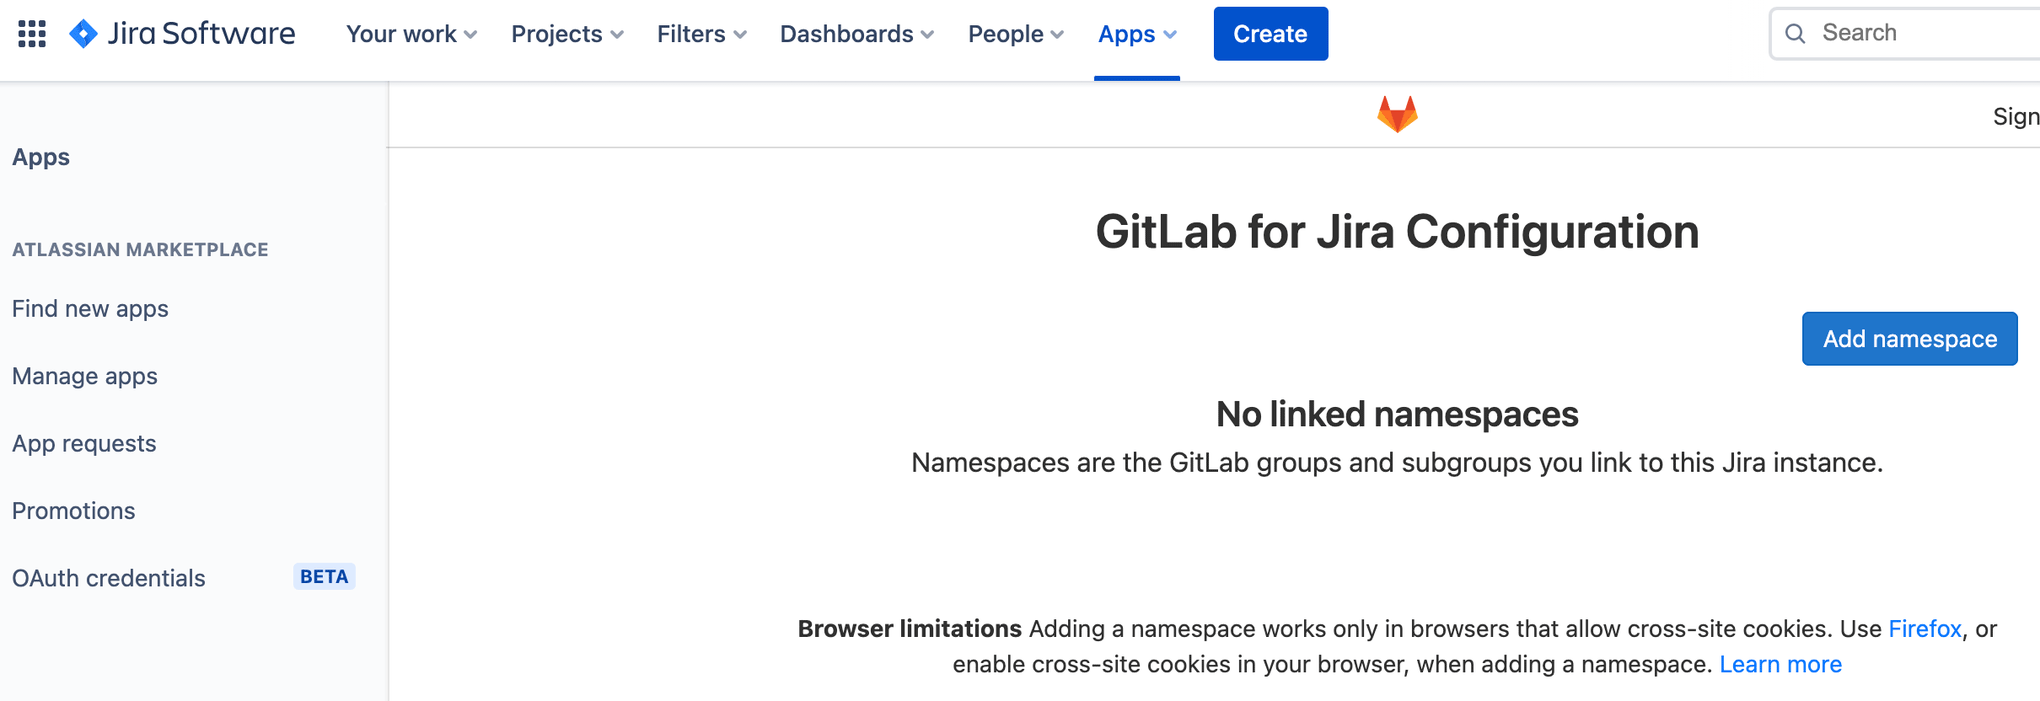 Scherm om een naamspace toe te voegen aan je GitLab Jira-softwareconfiguratie